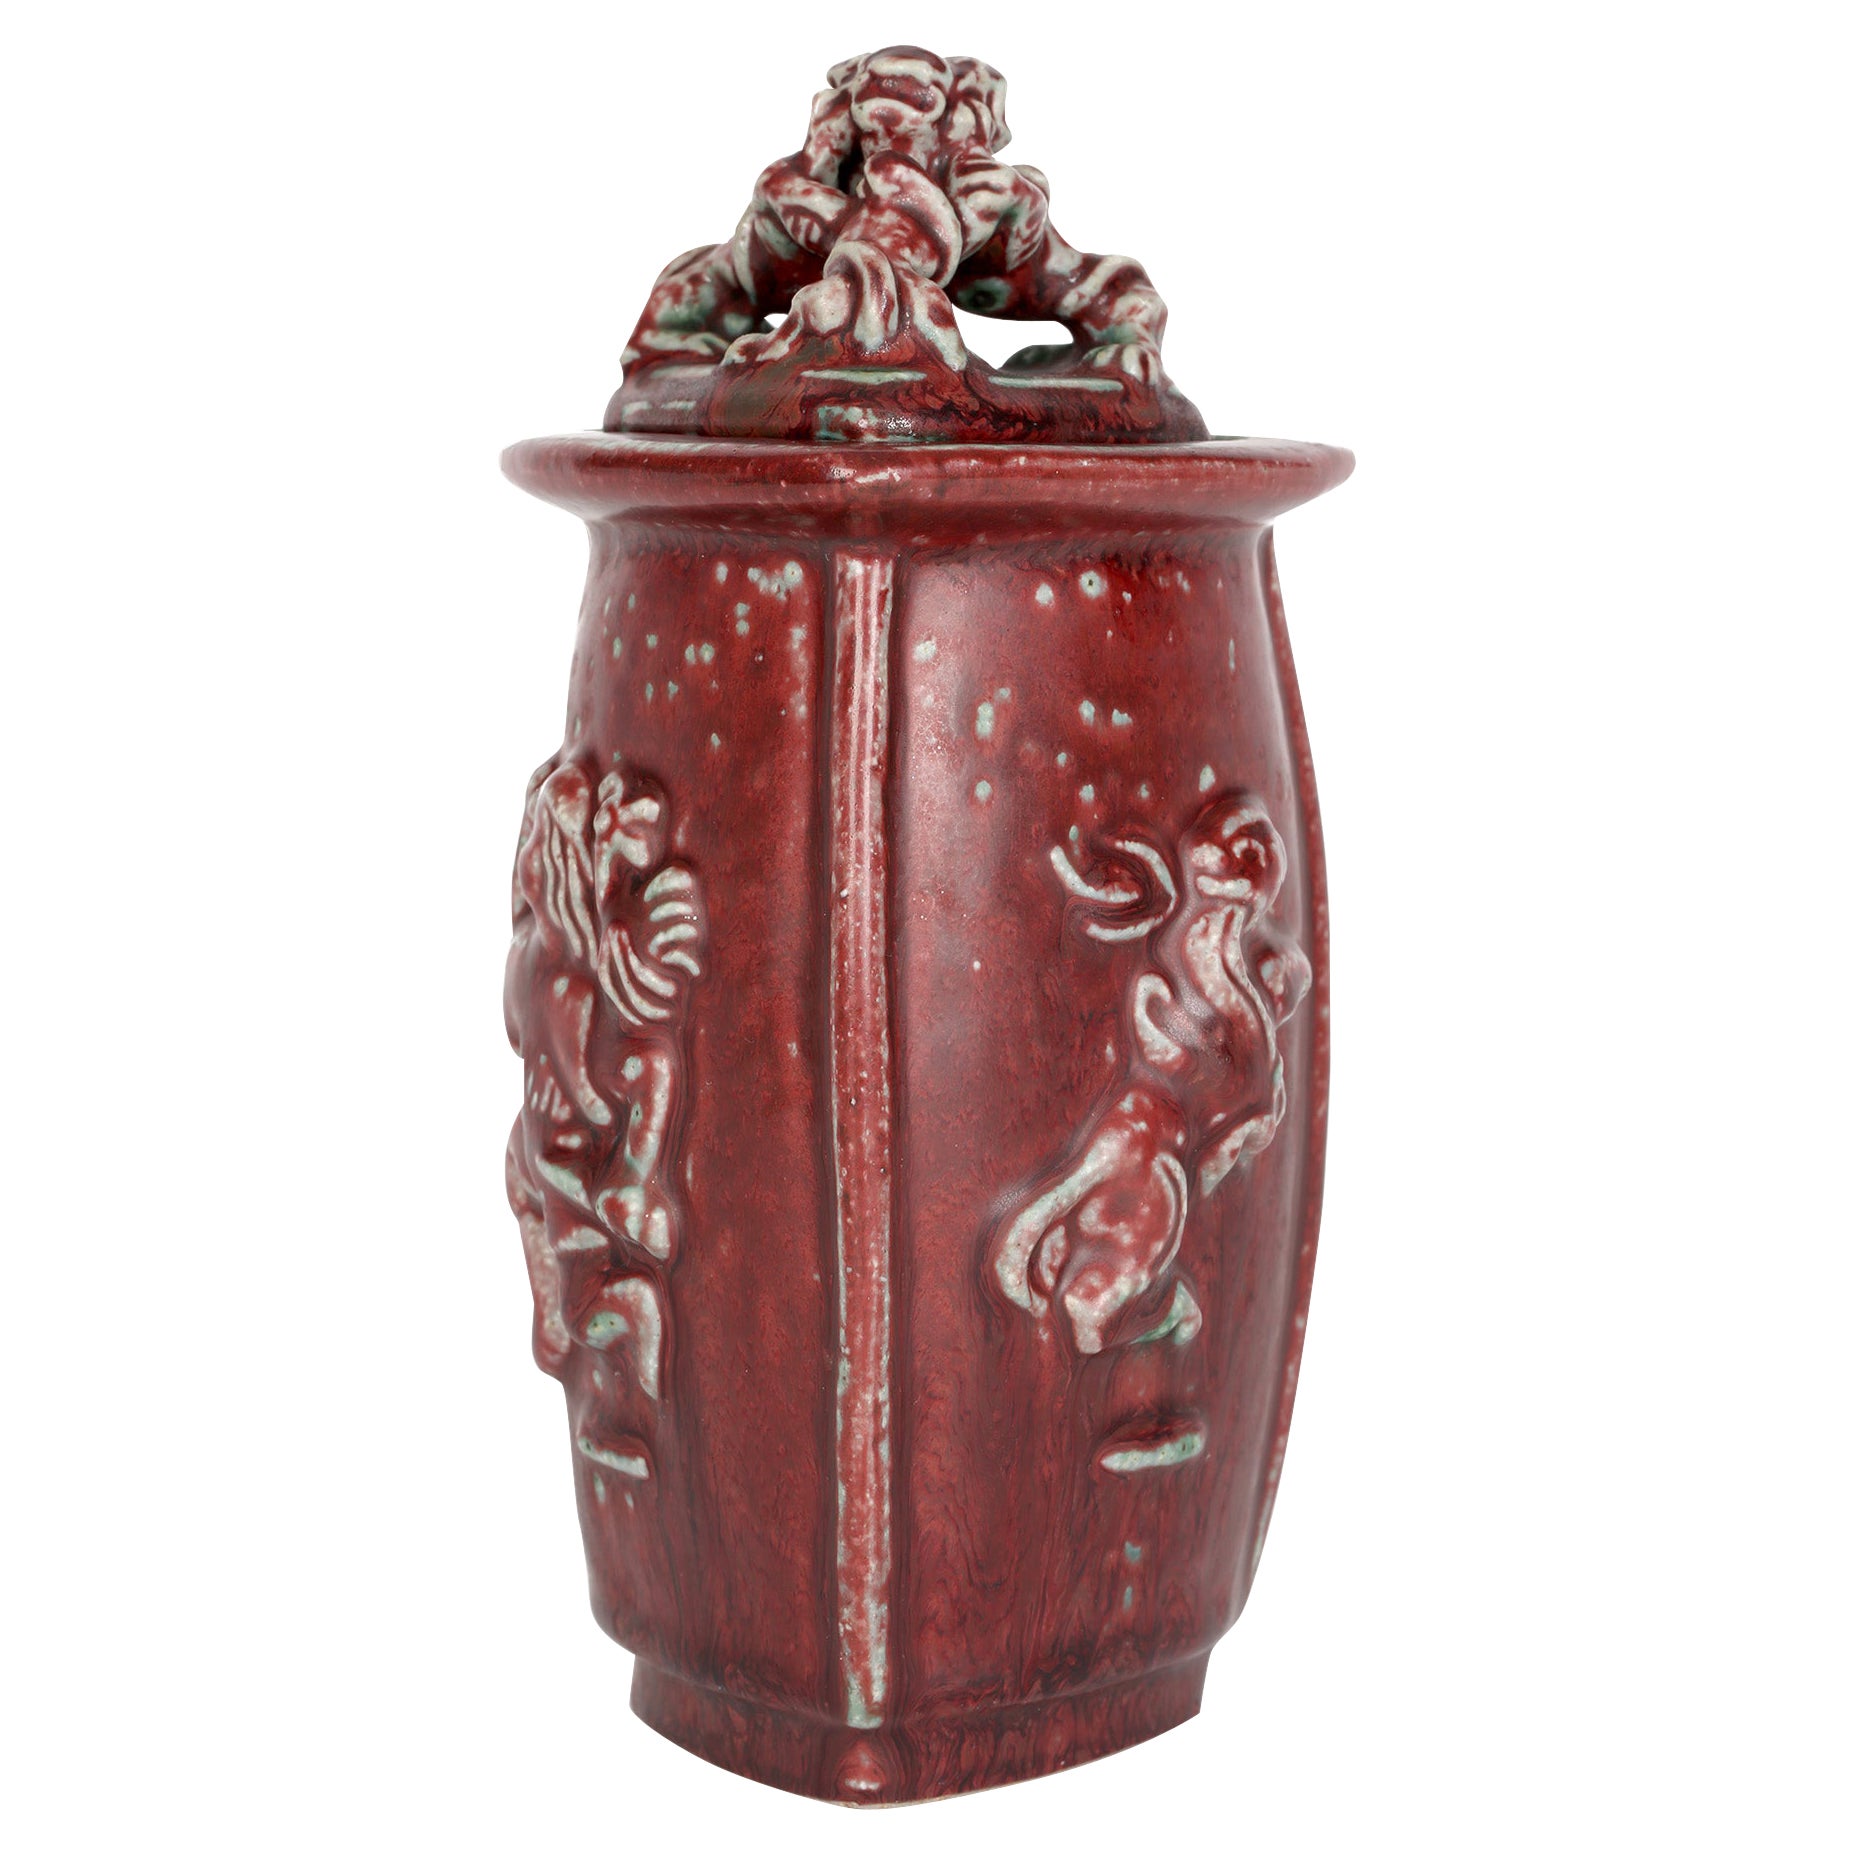 Bode Willumsen Royal Copenhagen Mythical Figure Sculptural Lidded Pottery Jar